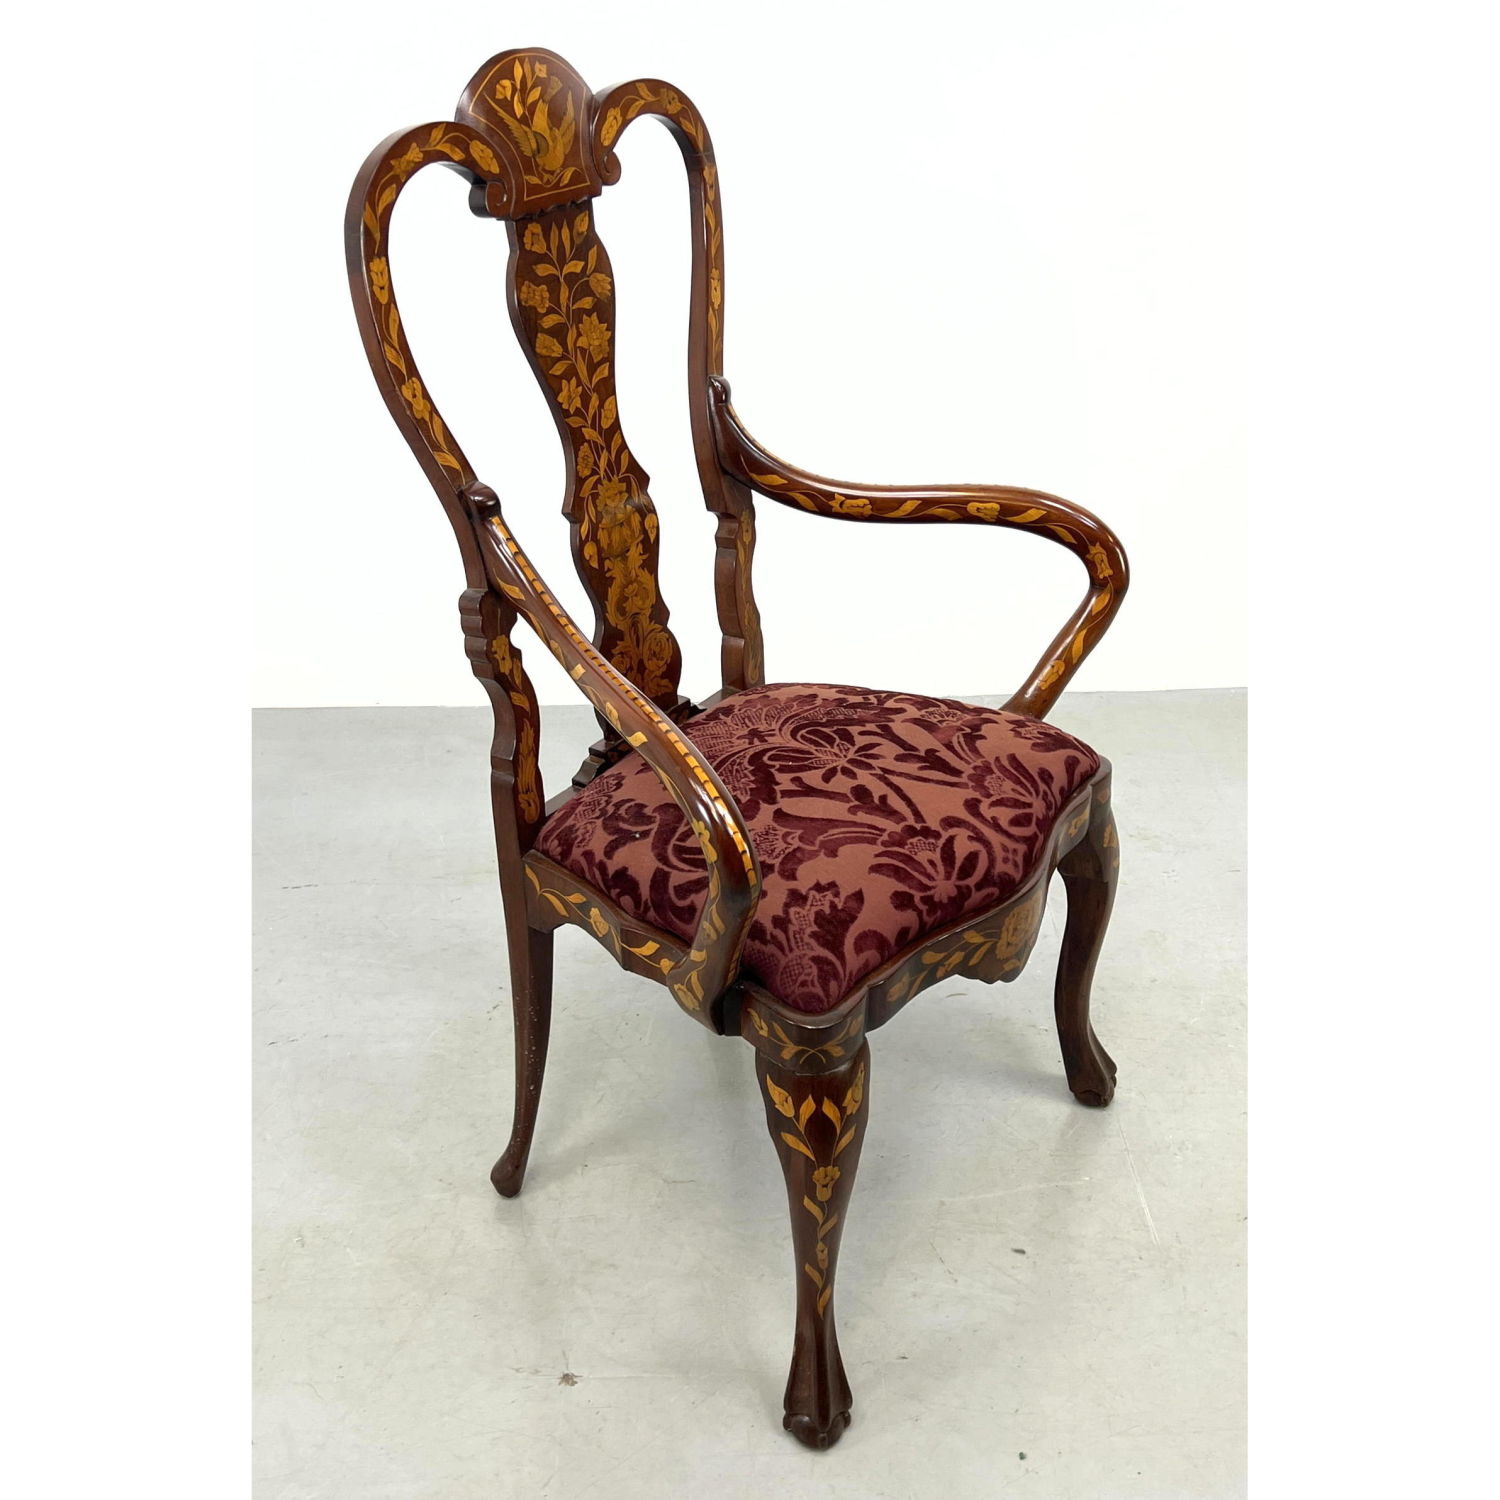 Elaborate Dutch Marquetry Arm Chair  2b9216